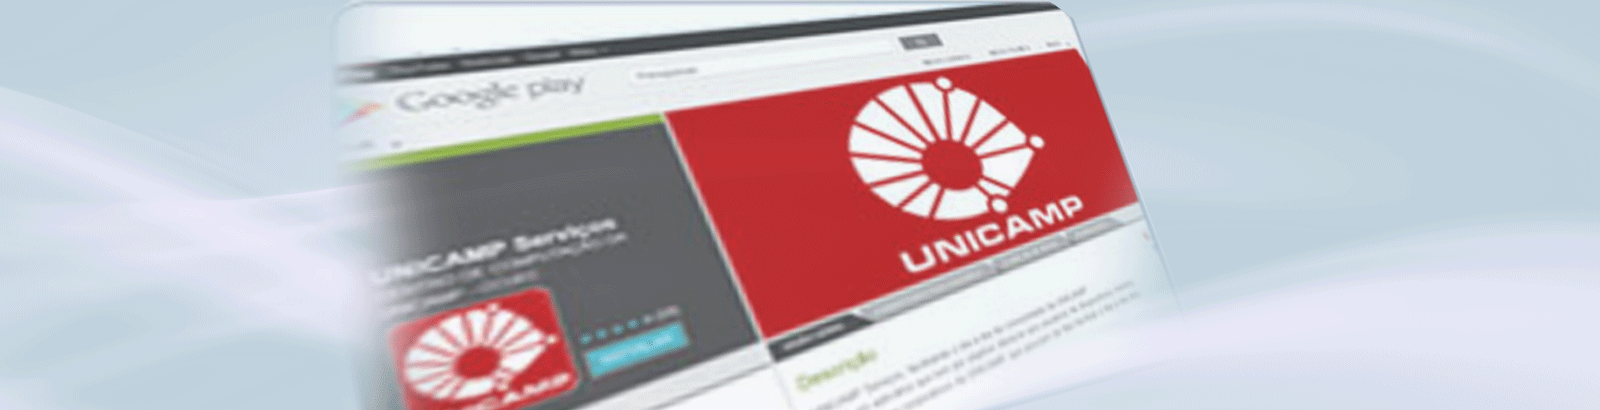 Como acessar serviços da Unicamp via plataforma Android